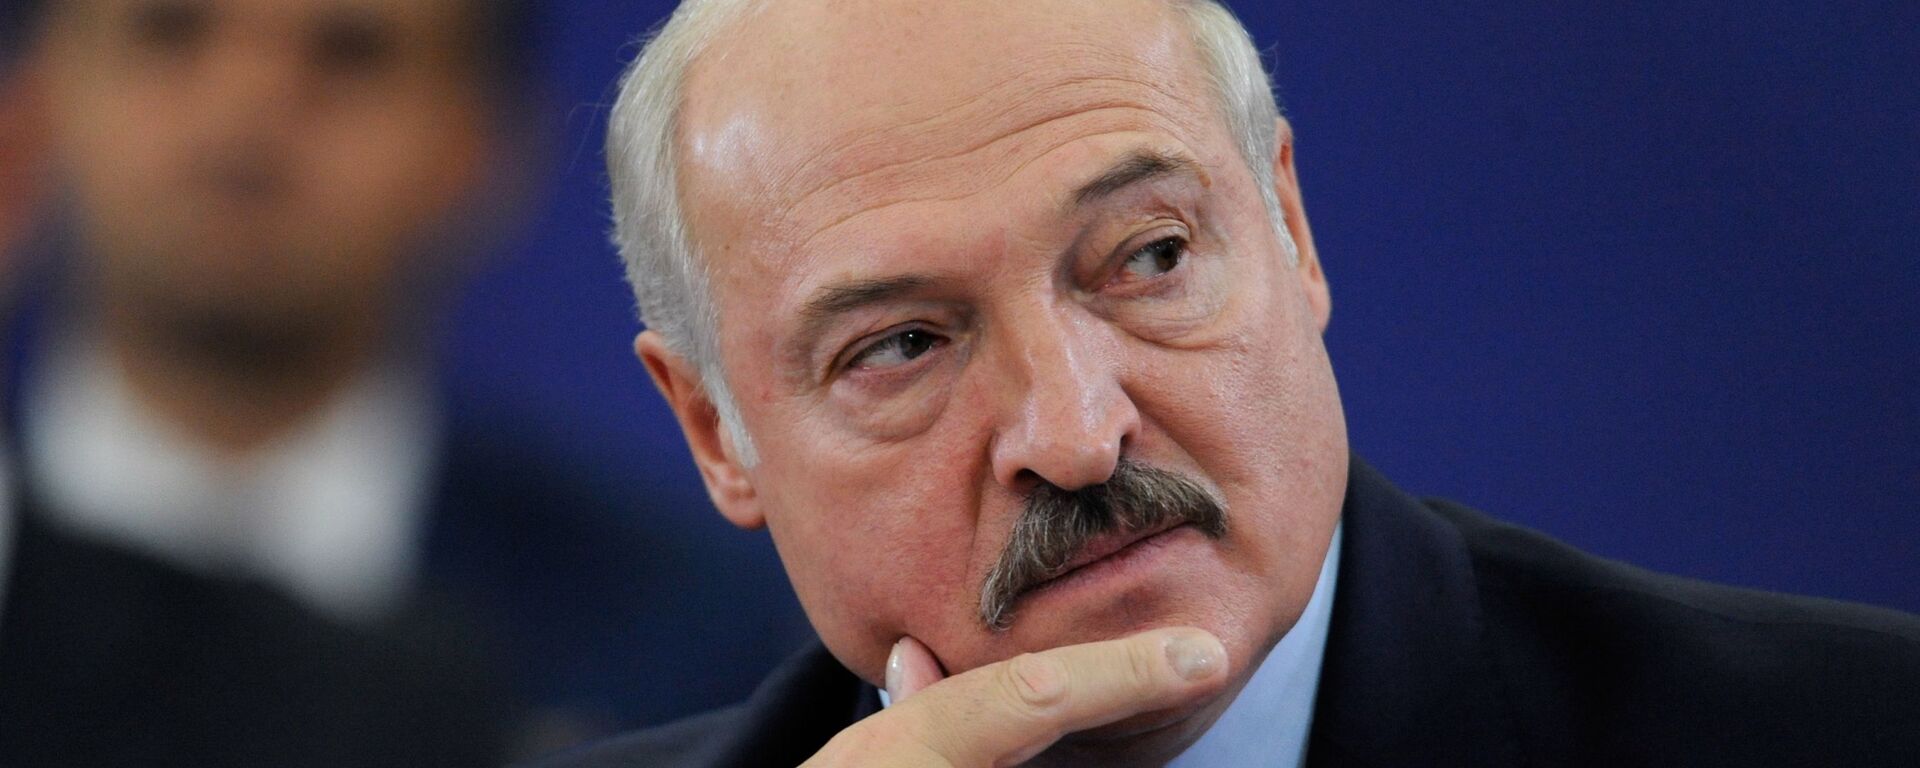 Alexandr Lukashenko, el presidente de Bielorrusia - Sputnik Mundo, 1920, 05.09.2020